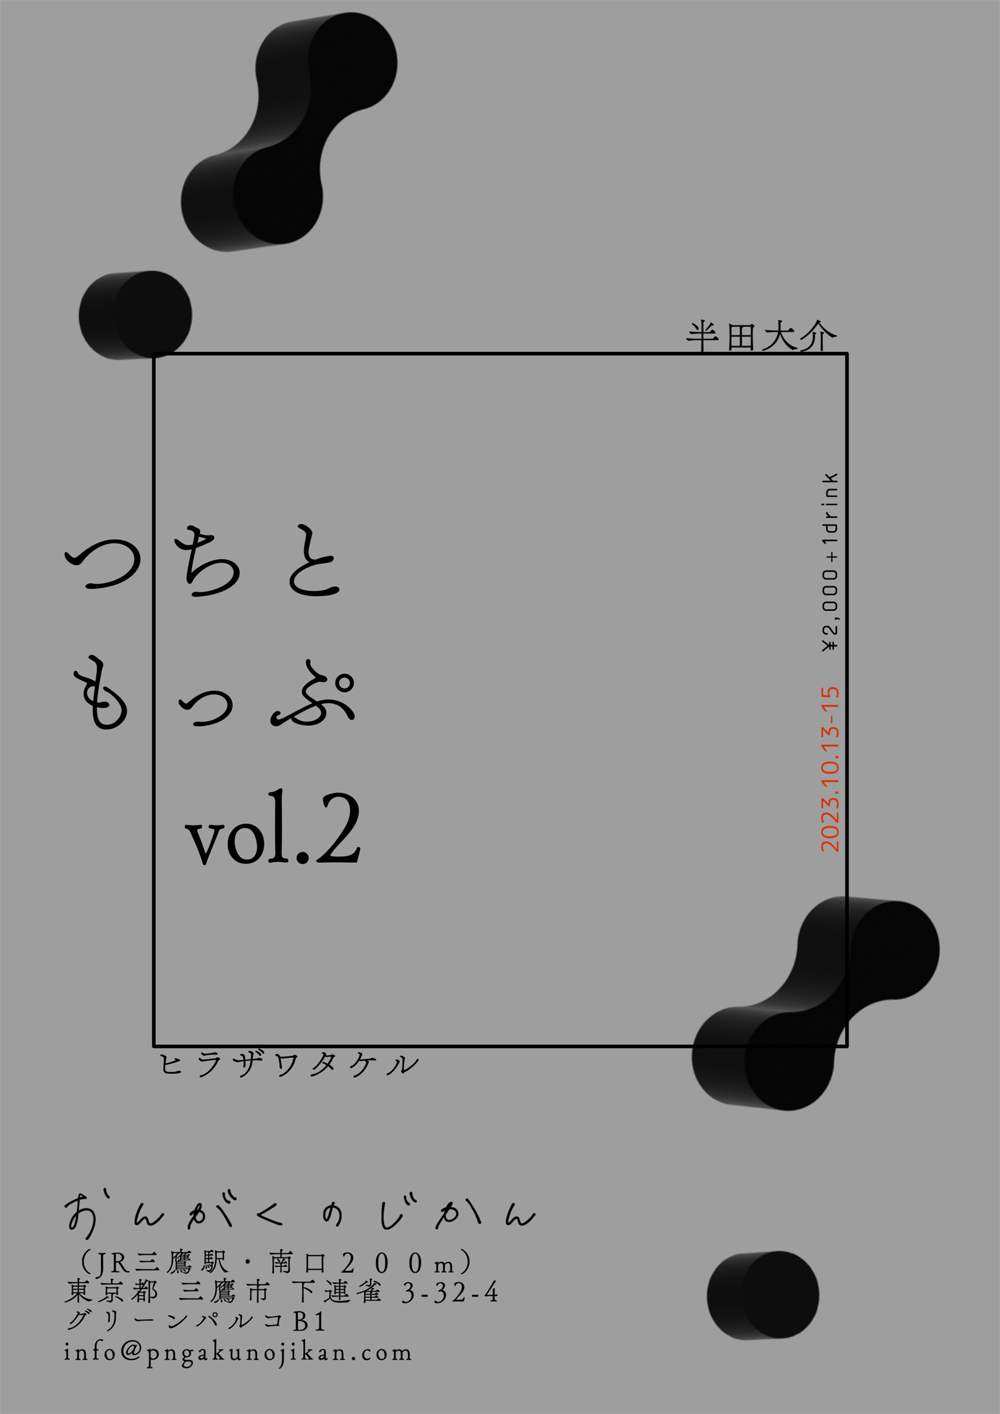 演劇公演「つちともっぷ vol.2」（昼の部）